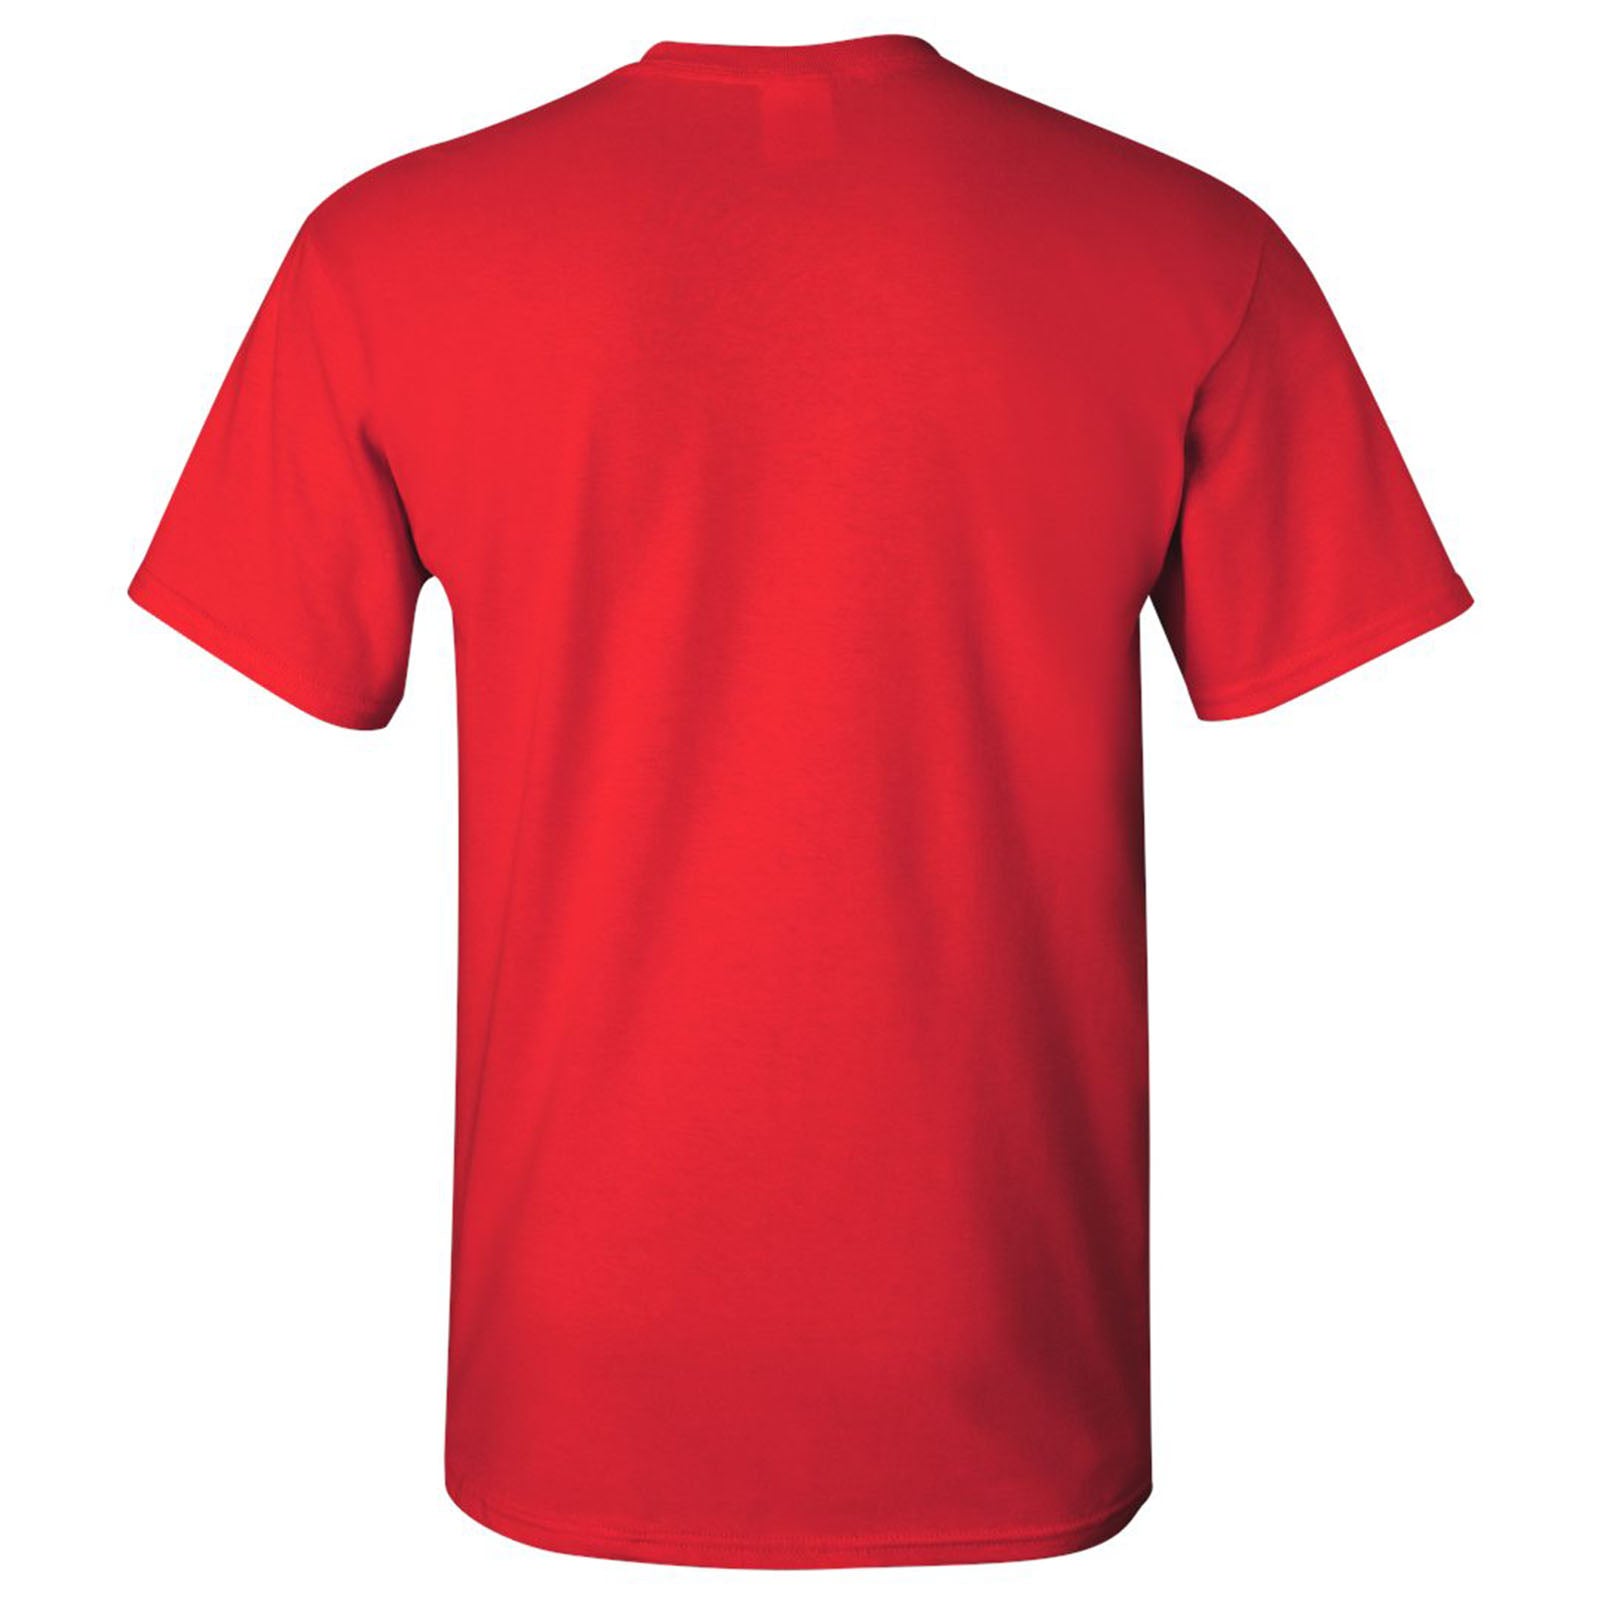 cardinal red t shirt